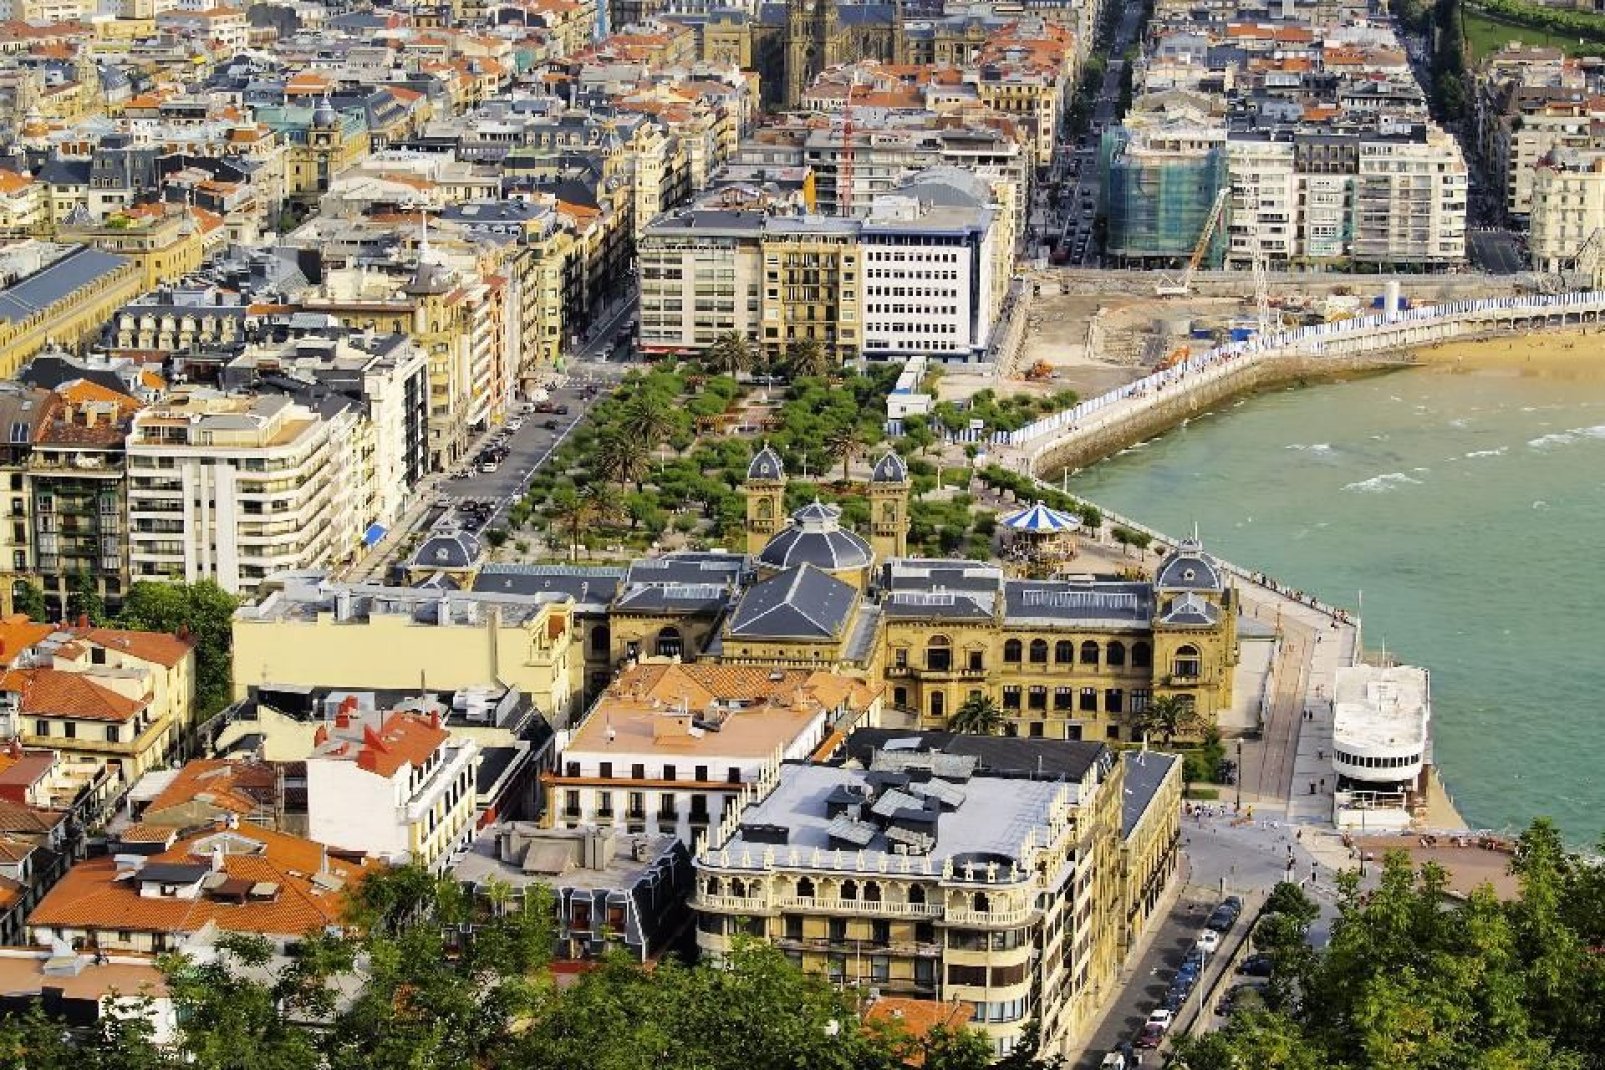 El esplendor de la mayoría de los edificios residenciales ha bastado para que San Sebastián sea una ciudad llena de encanto.